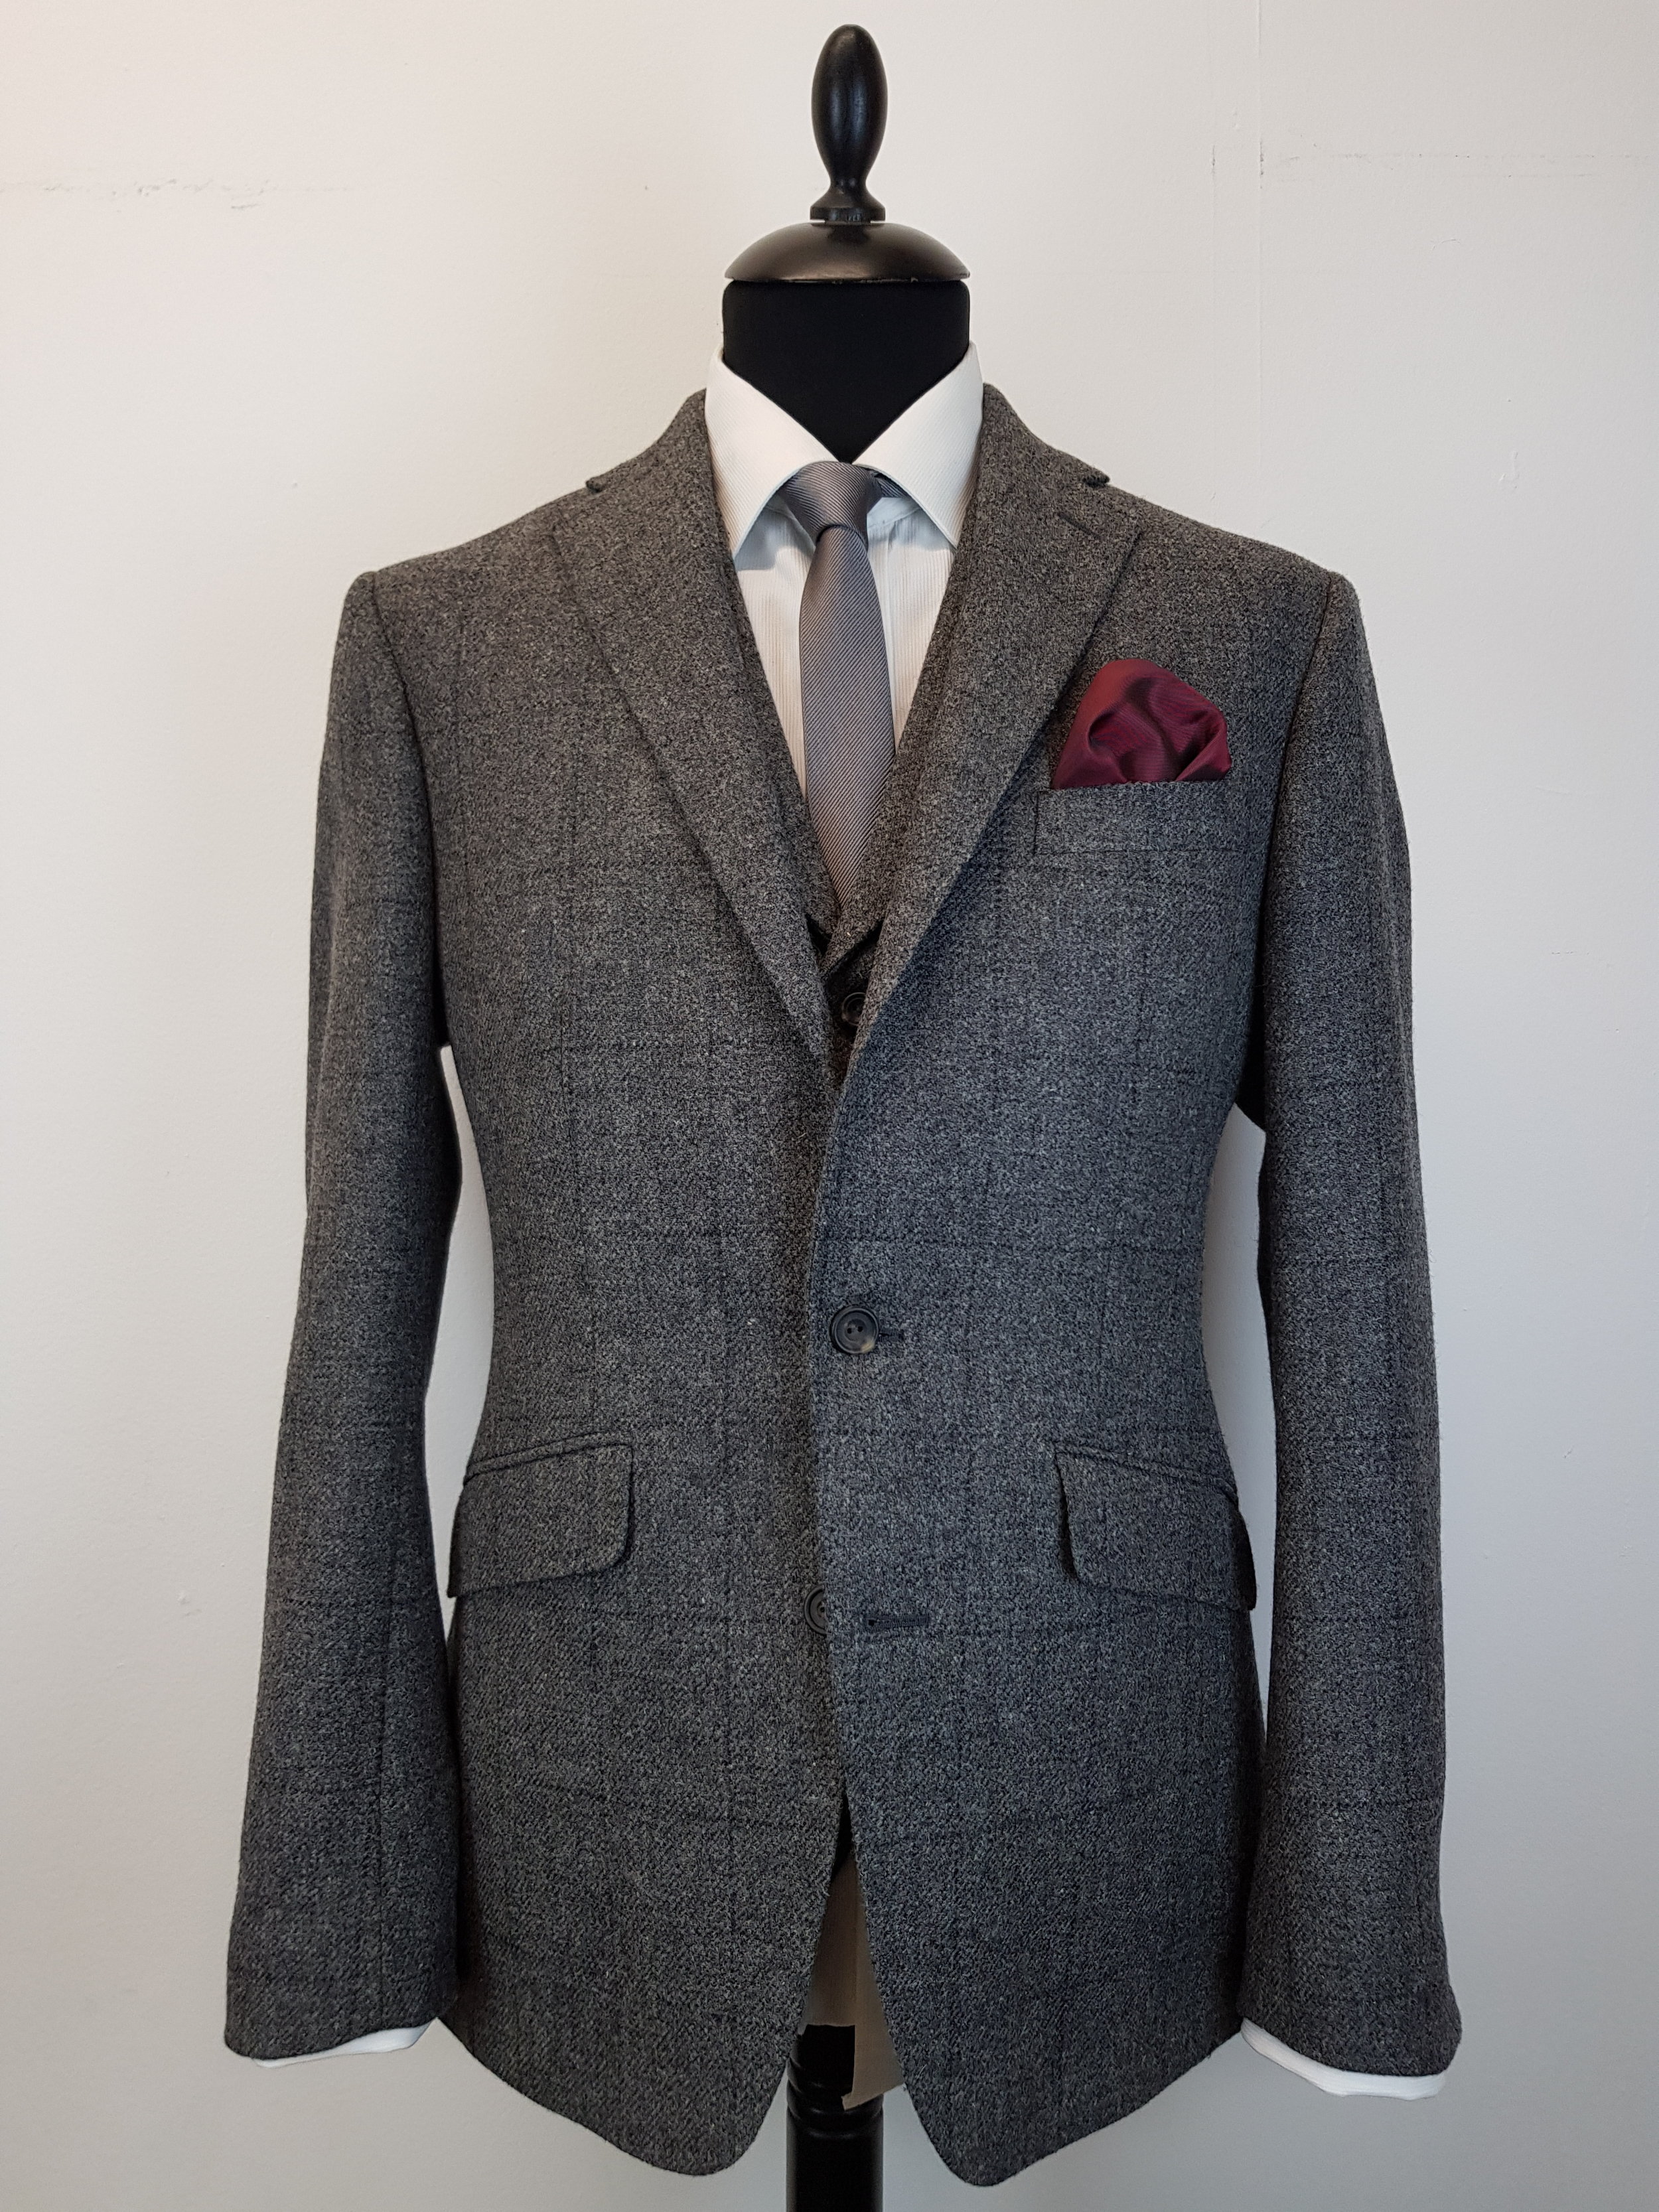 3 Piece Suit in Grey Check Cheviot Tweed — TWEED ADDICT